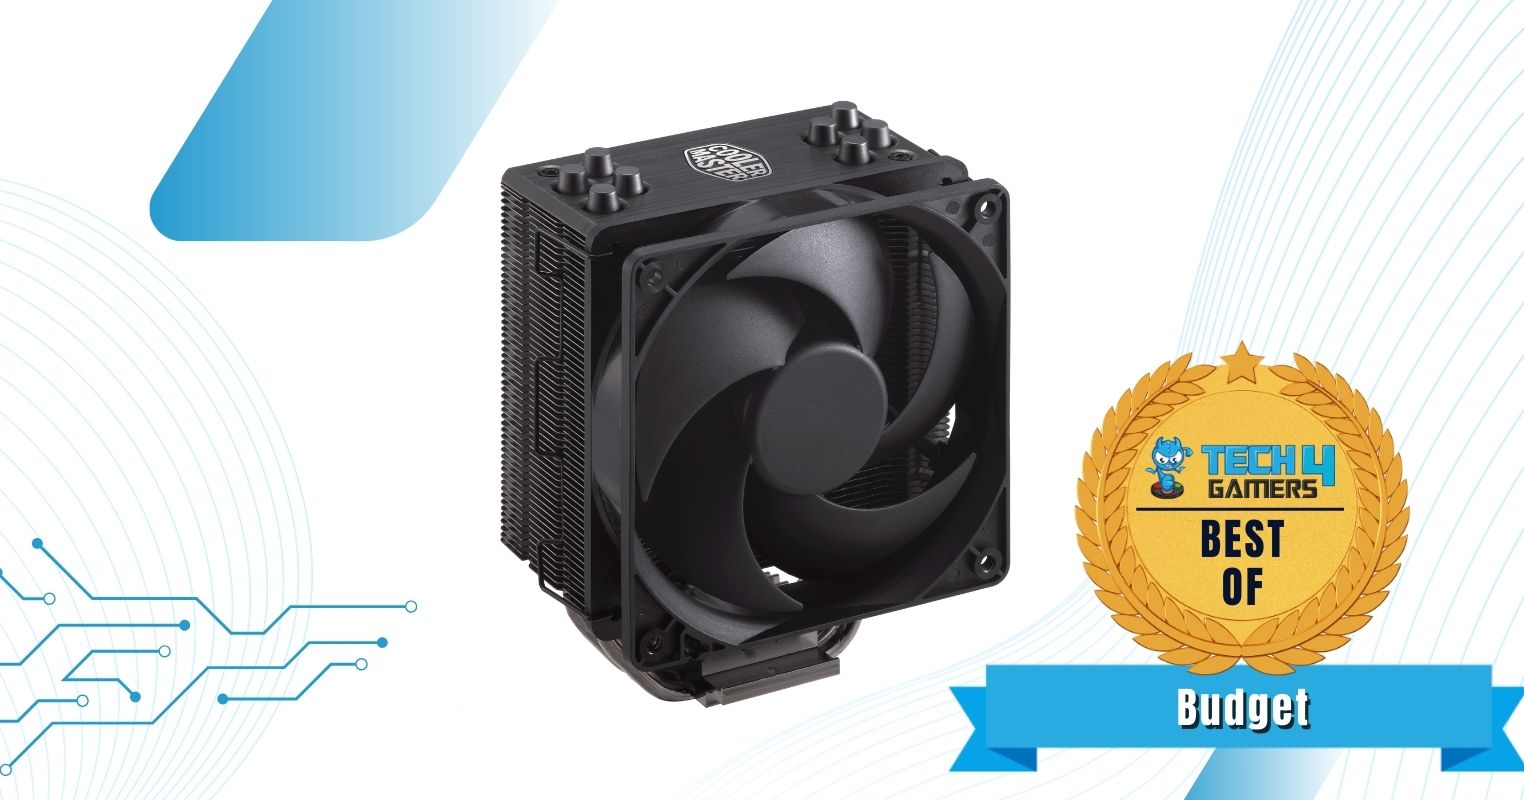 Best Budget CPU Cooler For Ryzen 5 7600X - Cooler Master Hyper 212 Black Edition.